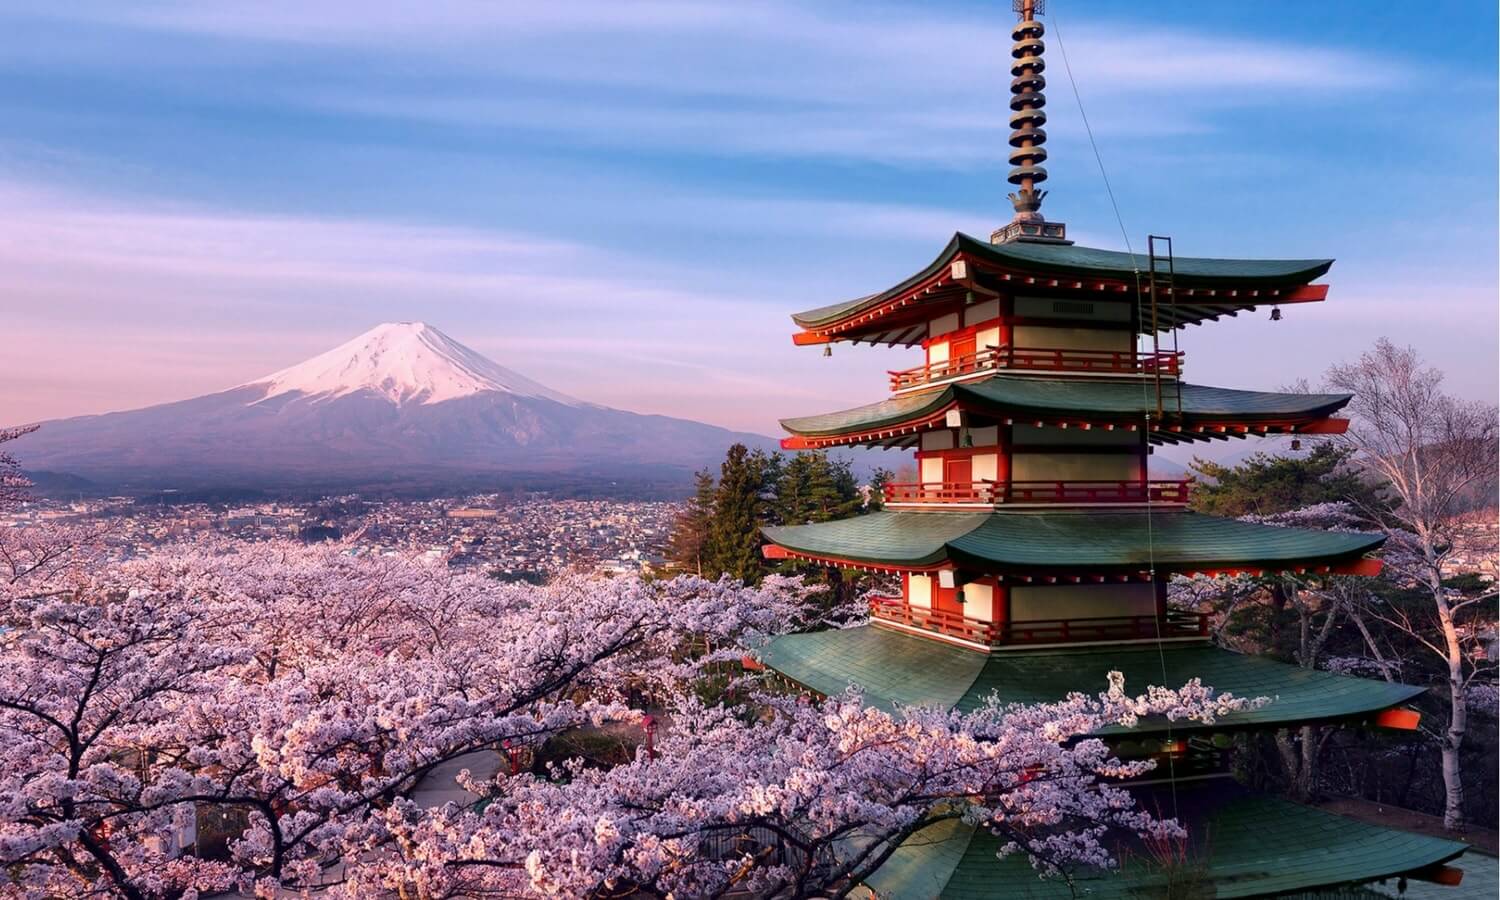 Chi phí xin visa Nhật Bản và Mẹo hay khi đi du lịch bạn nên biết